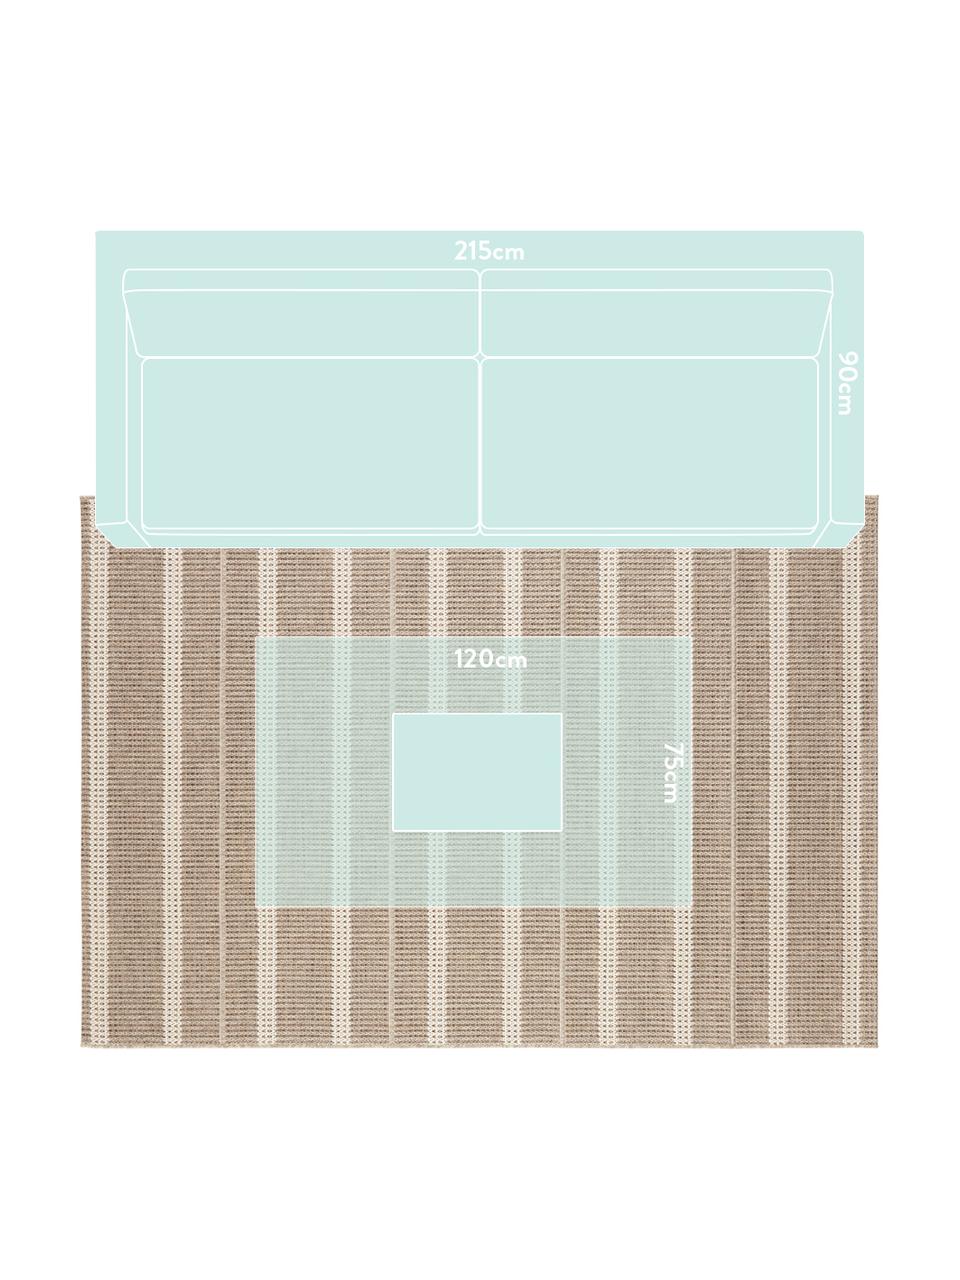 In- und Outdoor Teppich Laon, Jute-Look, 100% Polypropylen, Braun, Beige, B 200 x L 290 cm (Größe L)